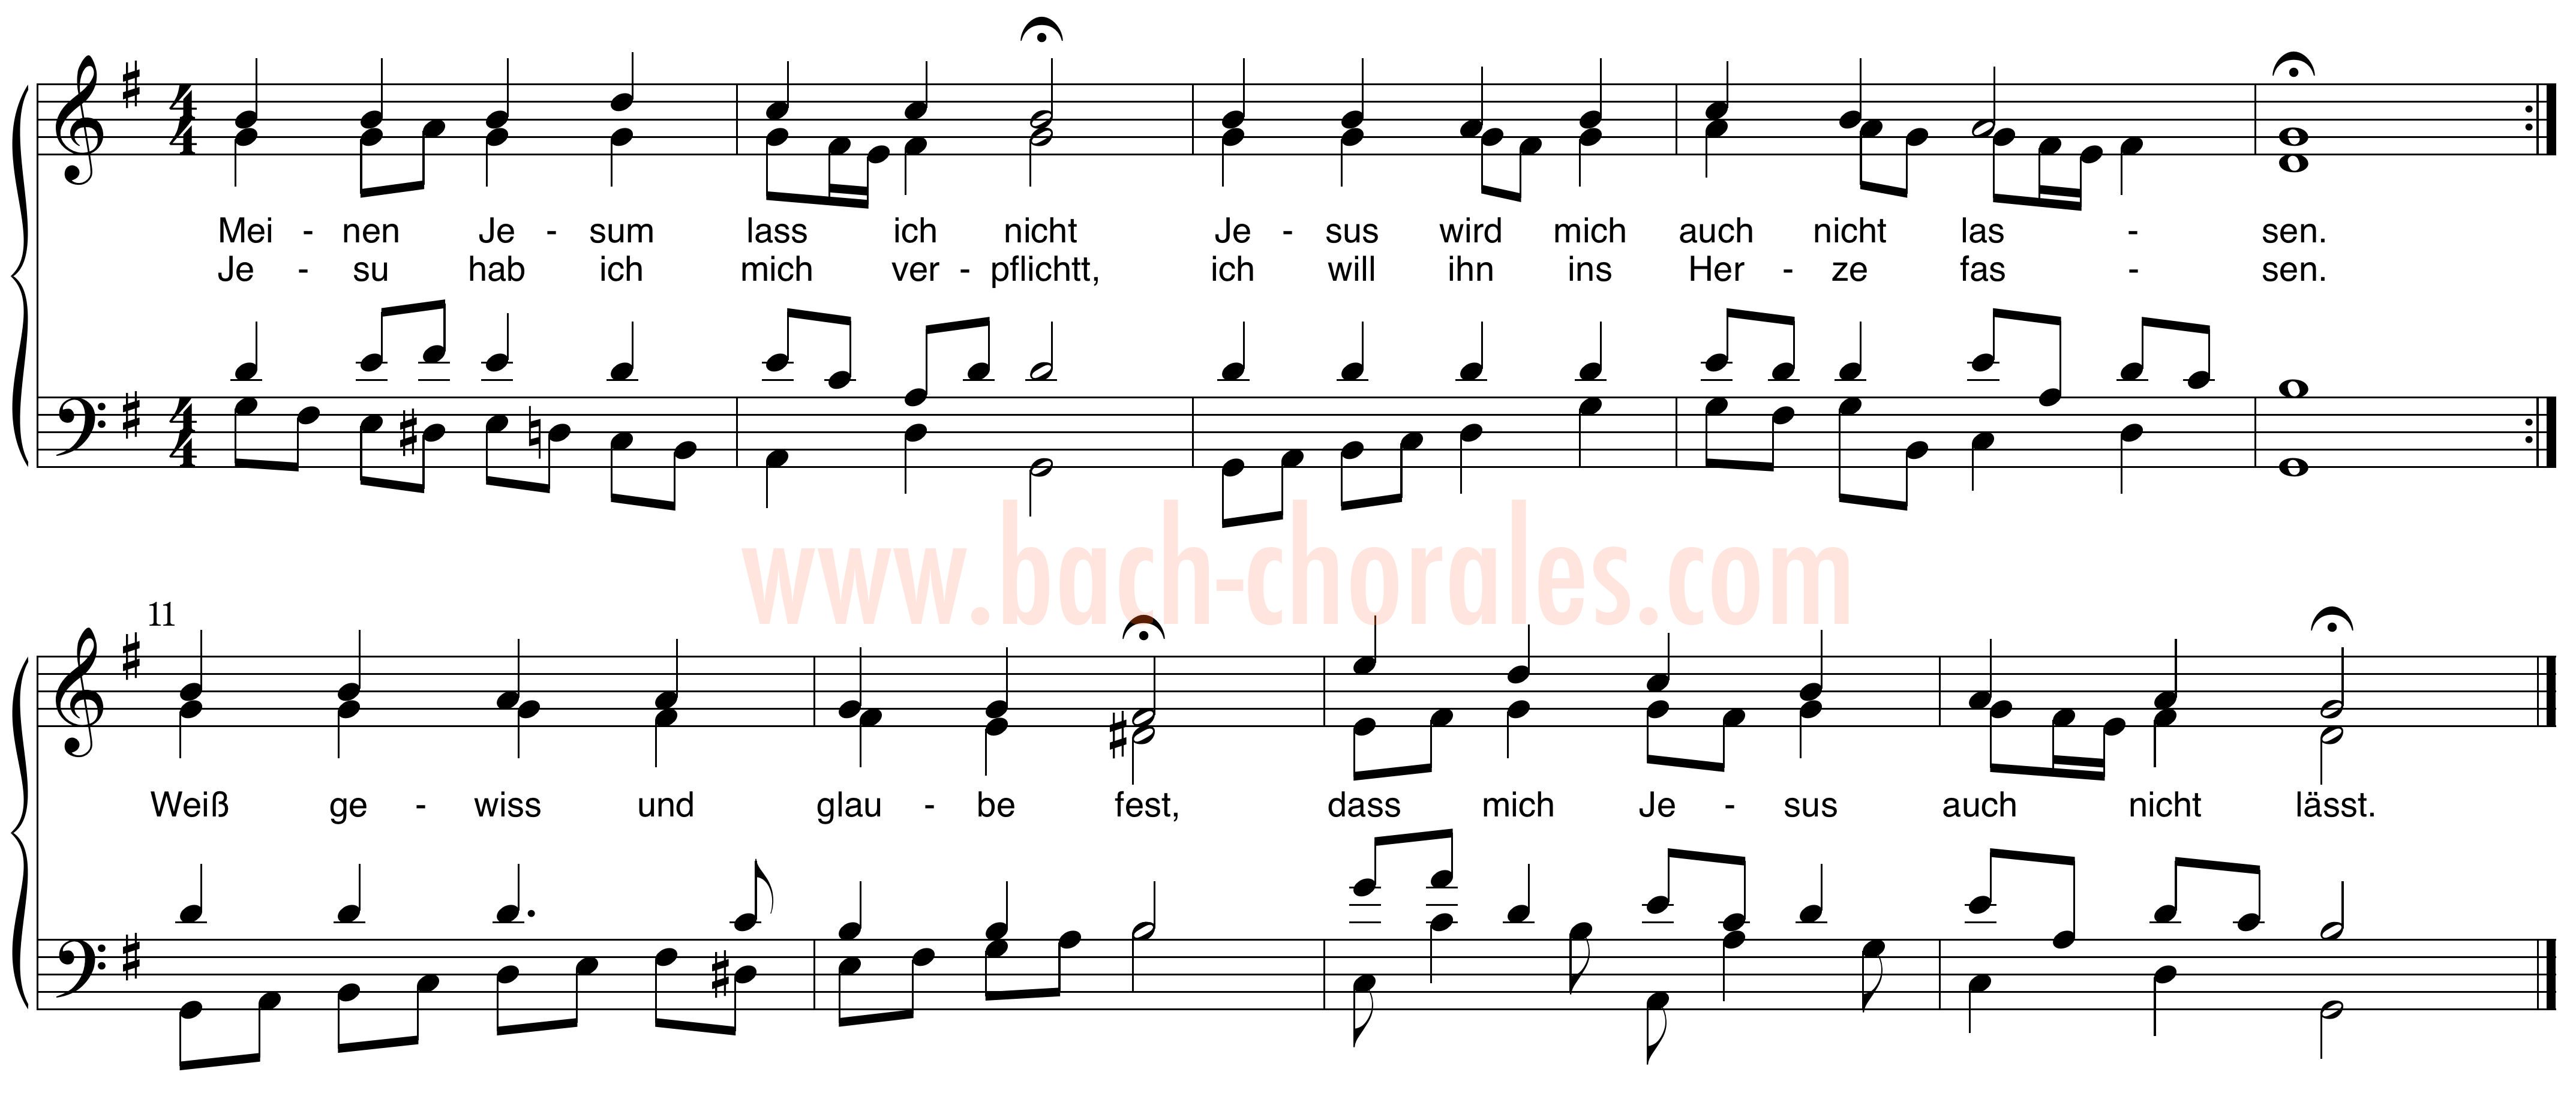 notenbeeld BWV 379 op https://www.bach-chorales.com/